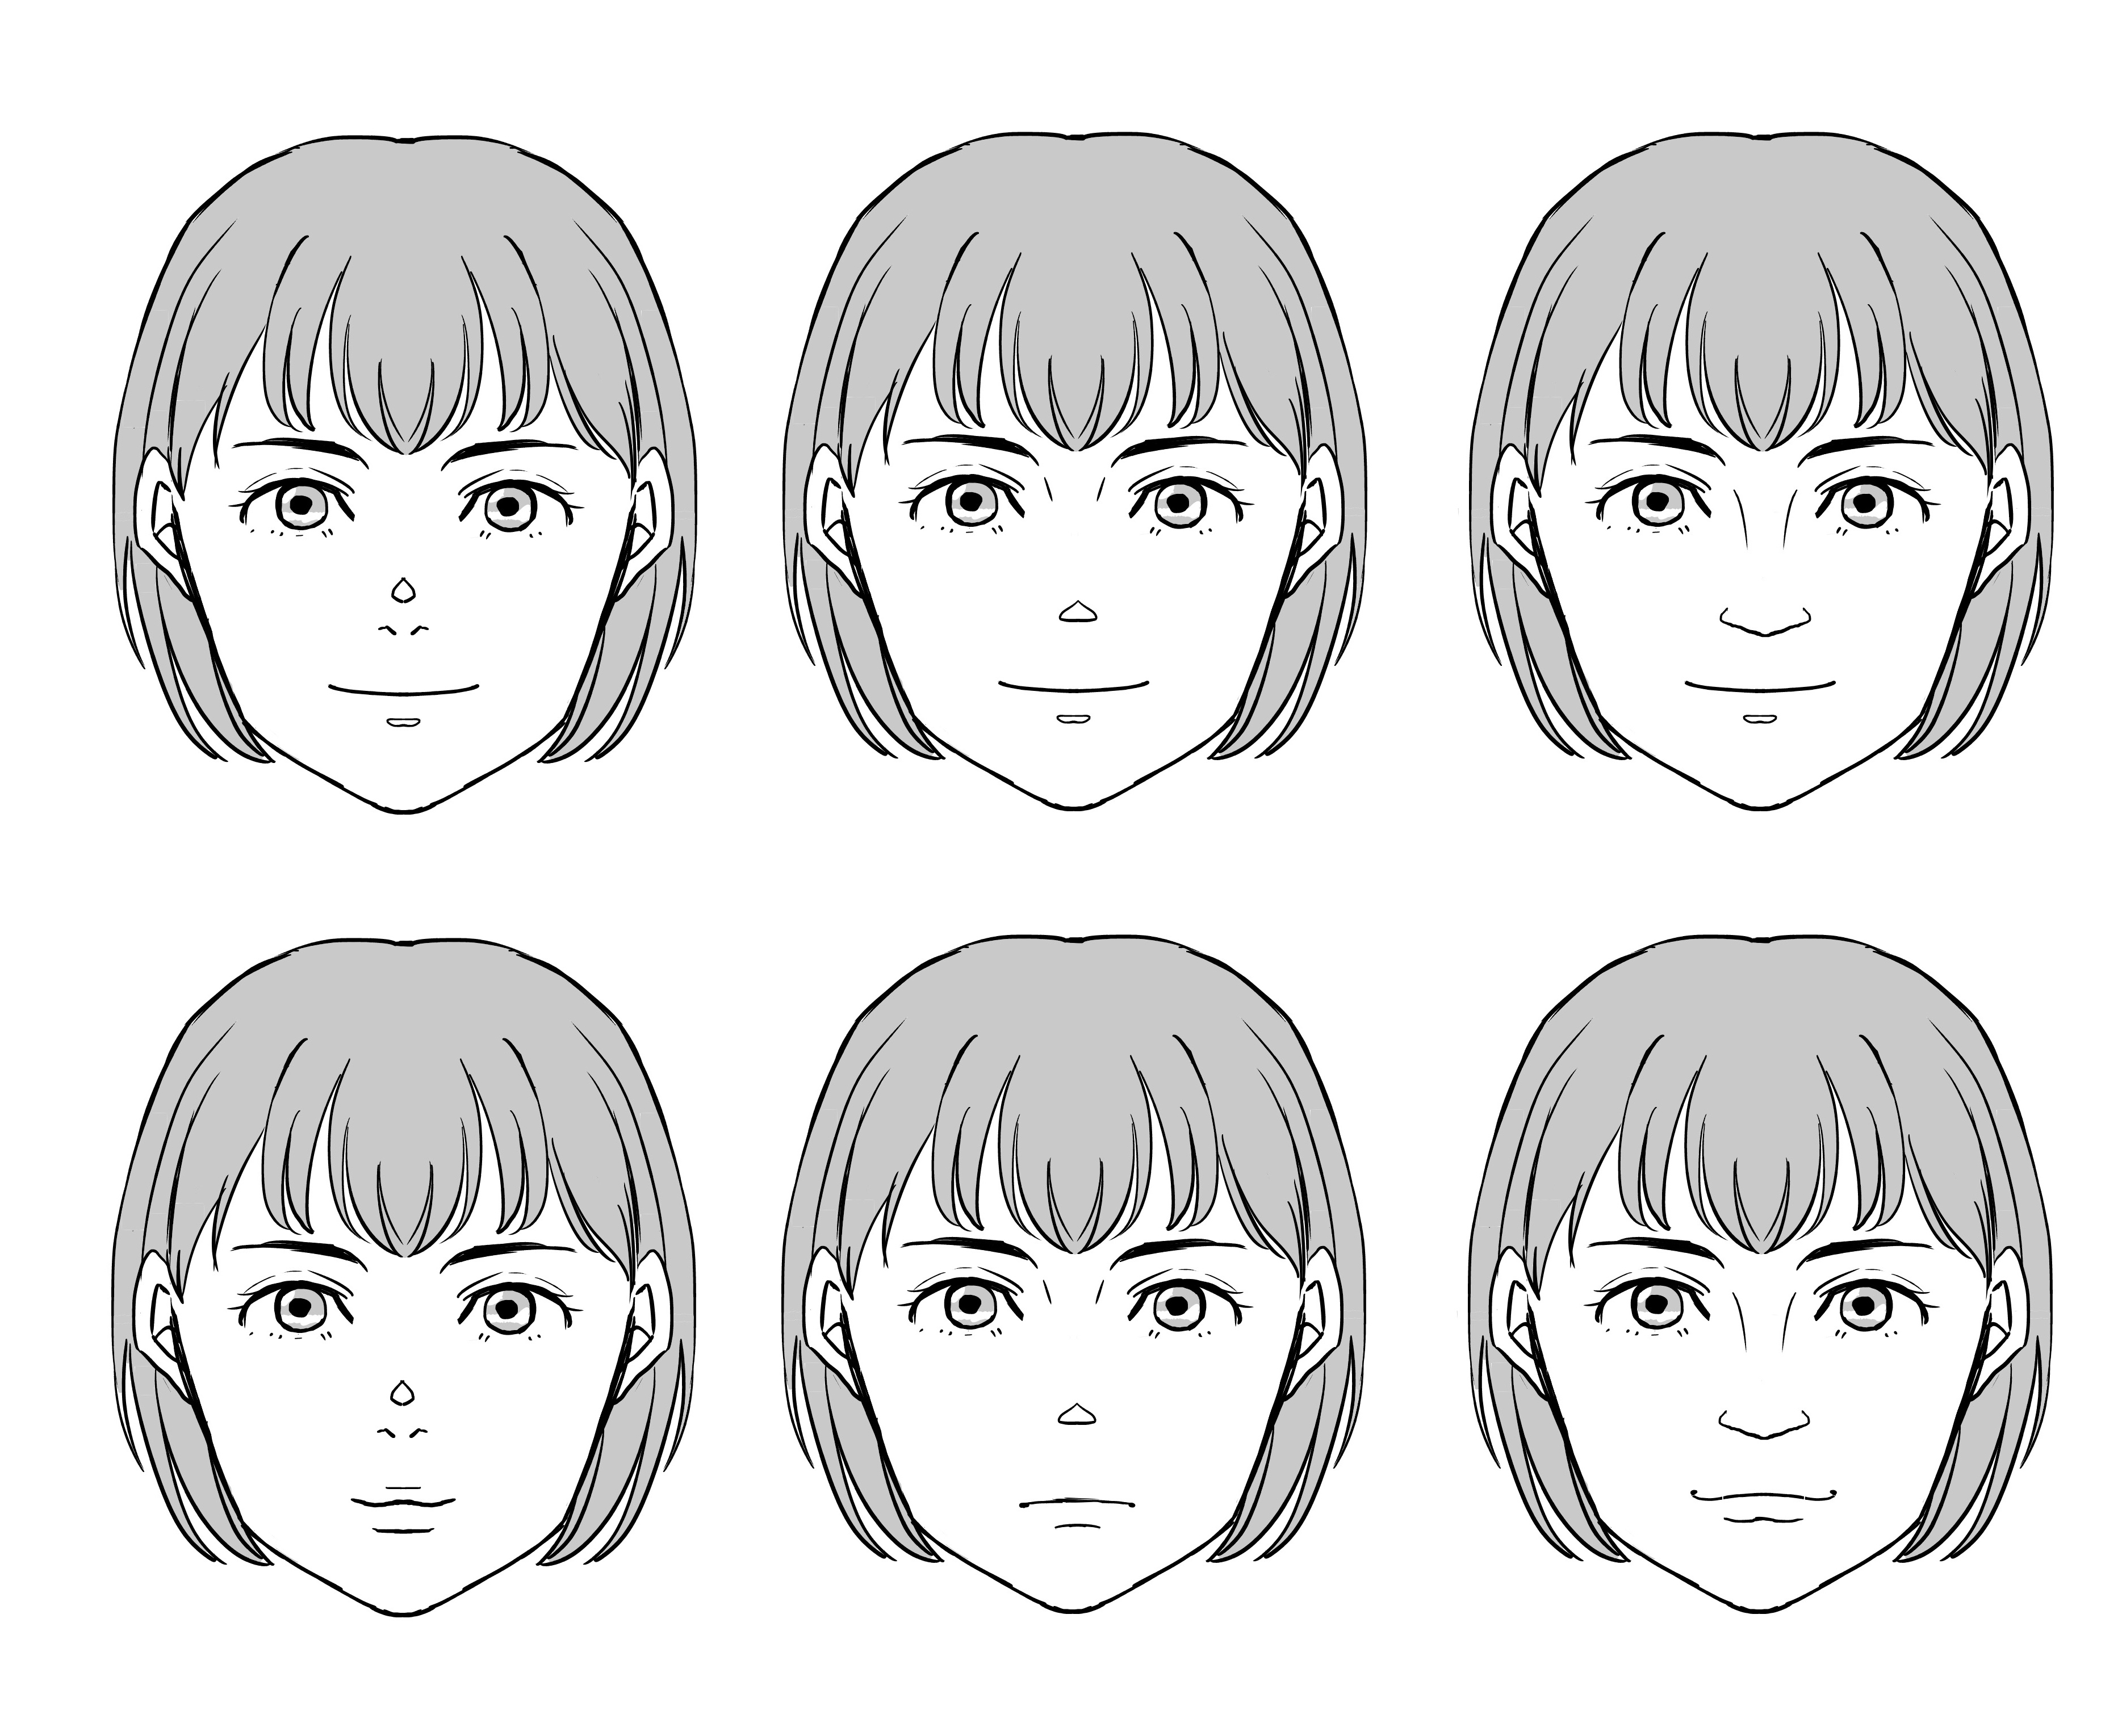 Vamos desenhar diferentes formas de olhos para personalizar o personagem!